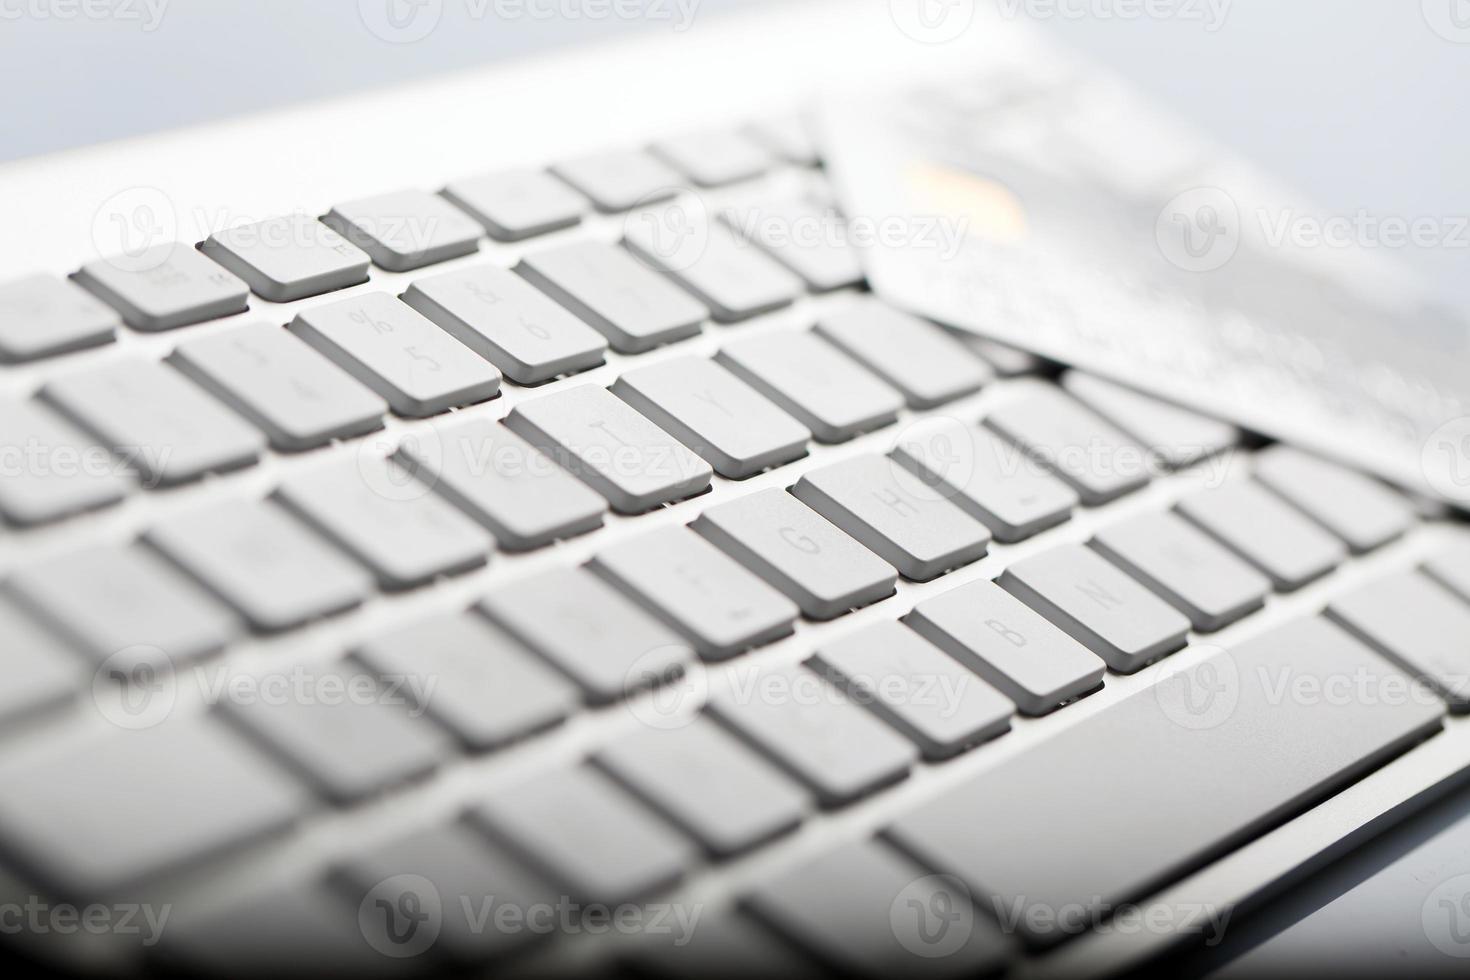 cartão de crédito em um teclado de computador foto